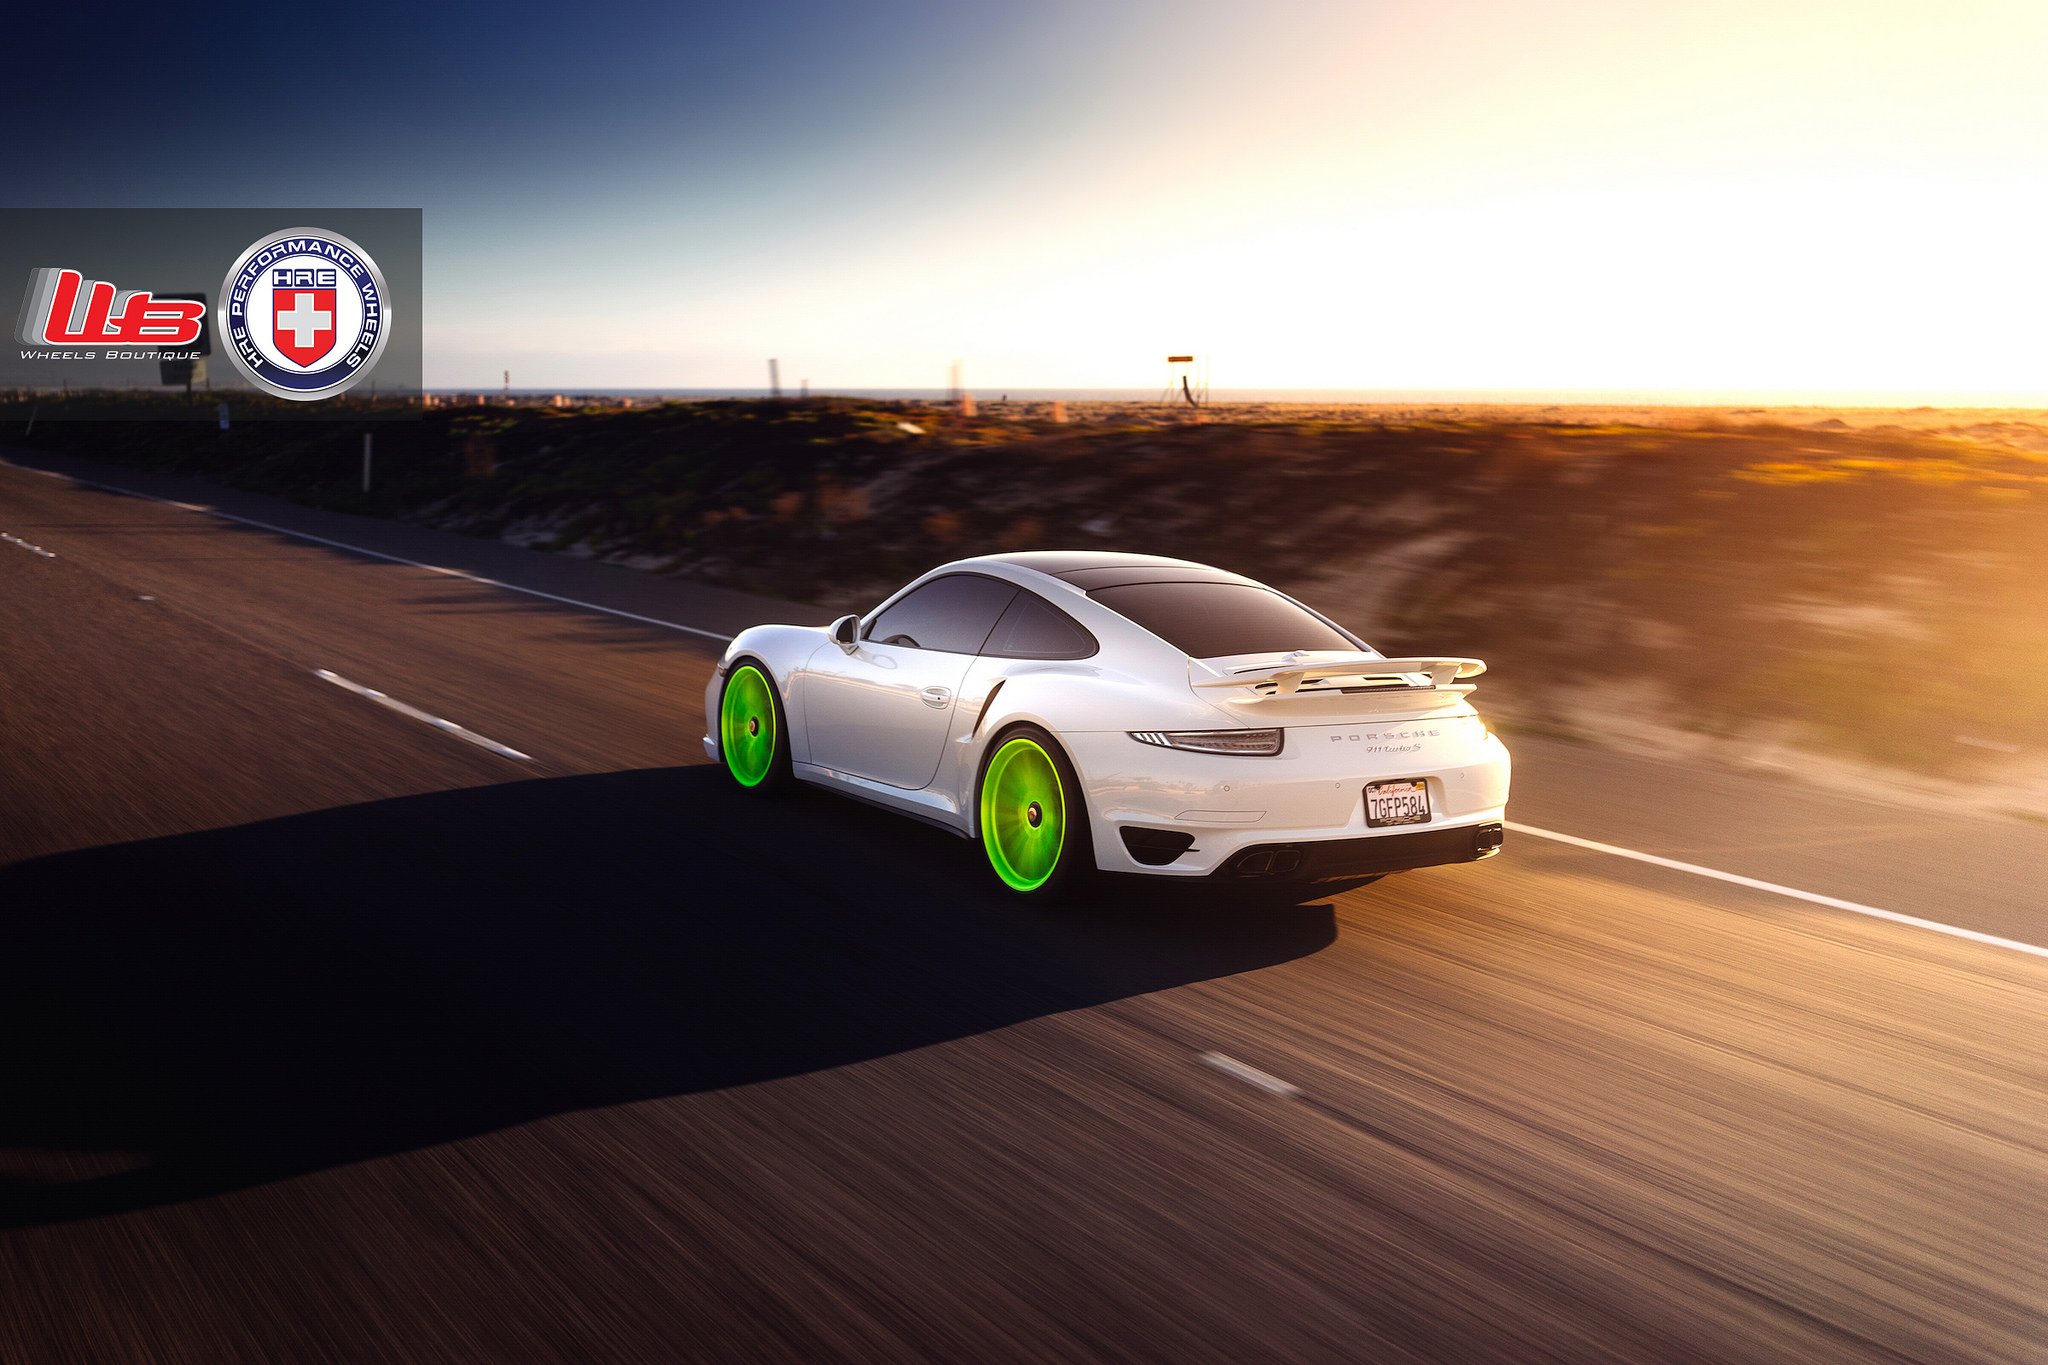 2015, 991, Cars, Hre, Porsche, Tts, Tuning, Wheels Wallpaper